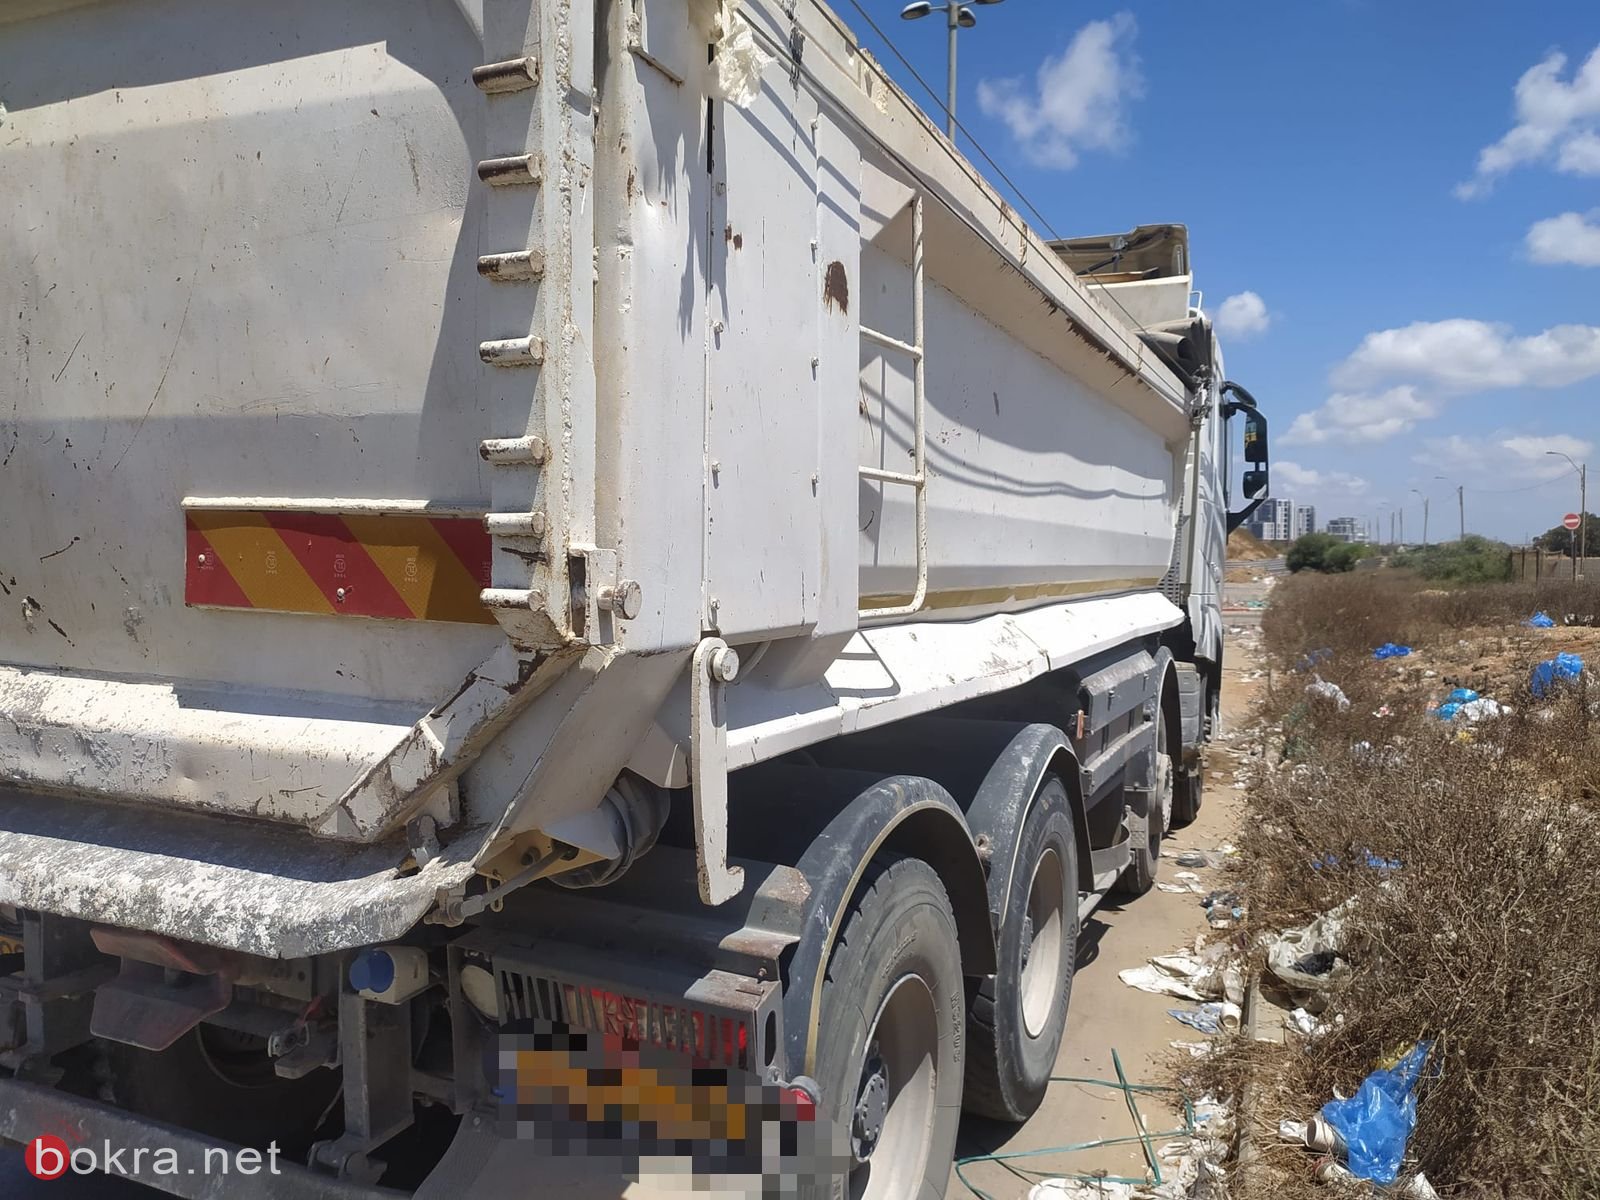 الشرطة الخضراء والشرطة  في تل أبيب تحقق مع أربعة مشتبه بهم بالتخلص غير القانوني من النفايات-0